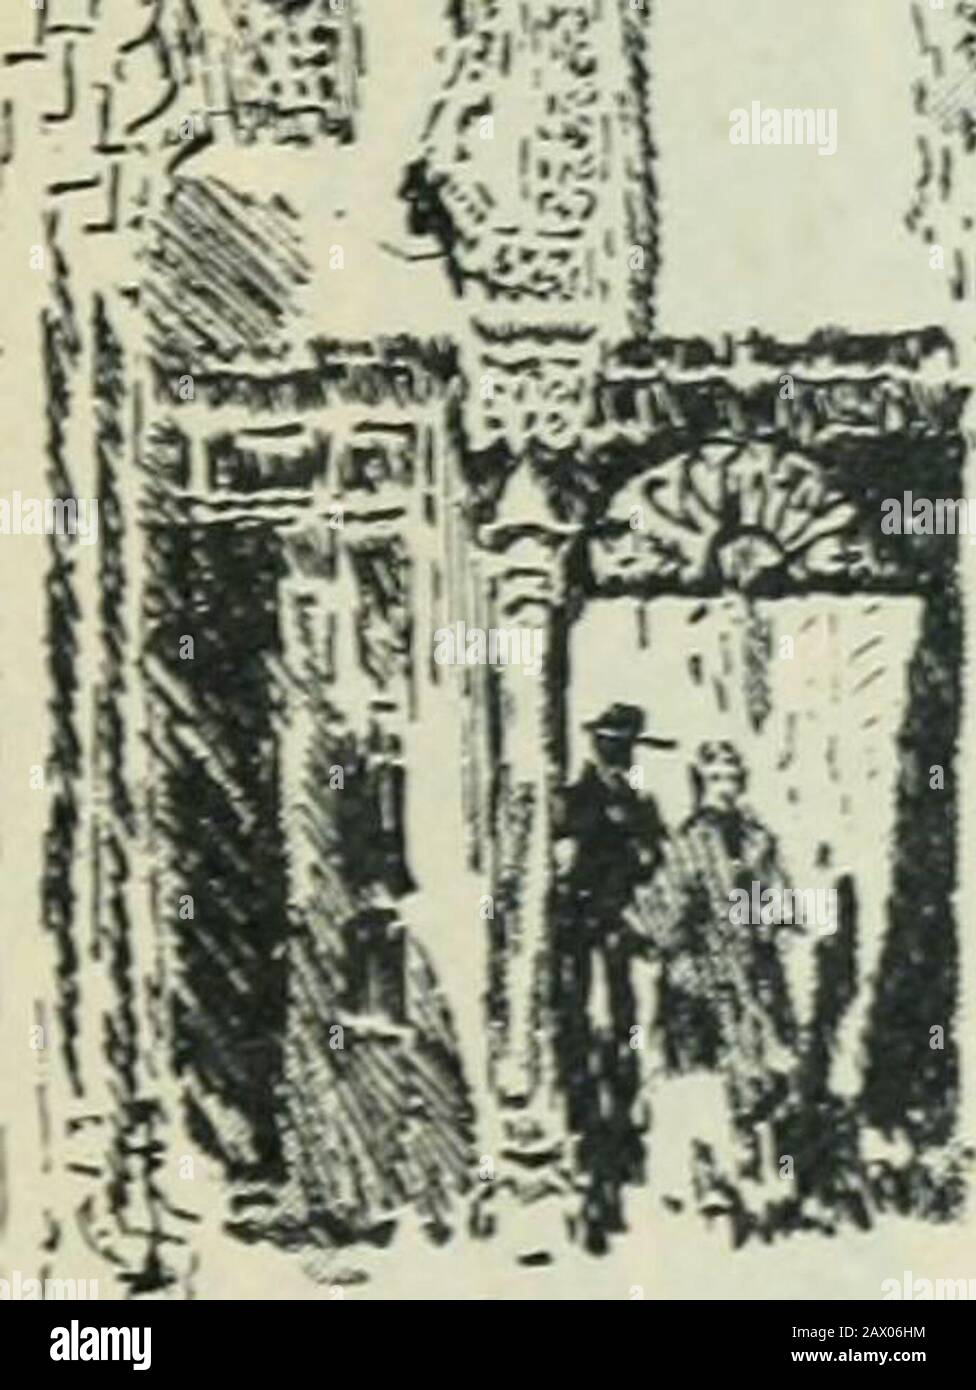 Die Festung Alhambra. Innerhalb des barbican war eine andere Gruppe von veteraninvaliden, eine Befestigungswache am Portal, während der Rest, eingehüllt in ihre zerfetzten Umhänge, auf den Steinbänken schlief.Dieses Portal wird als Tor der Gerechtigkeit bezeichnet, vom Tribunal innerhalb seiner Veranda während der Herrschaft in Muslim, Für die imme-diate-Studie von kleinlichen Ursachen: Eine Gewohnheit, die für die orientalischen 58 Bis - al.IIAMBRA * s* üblich ist Stockfoto